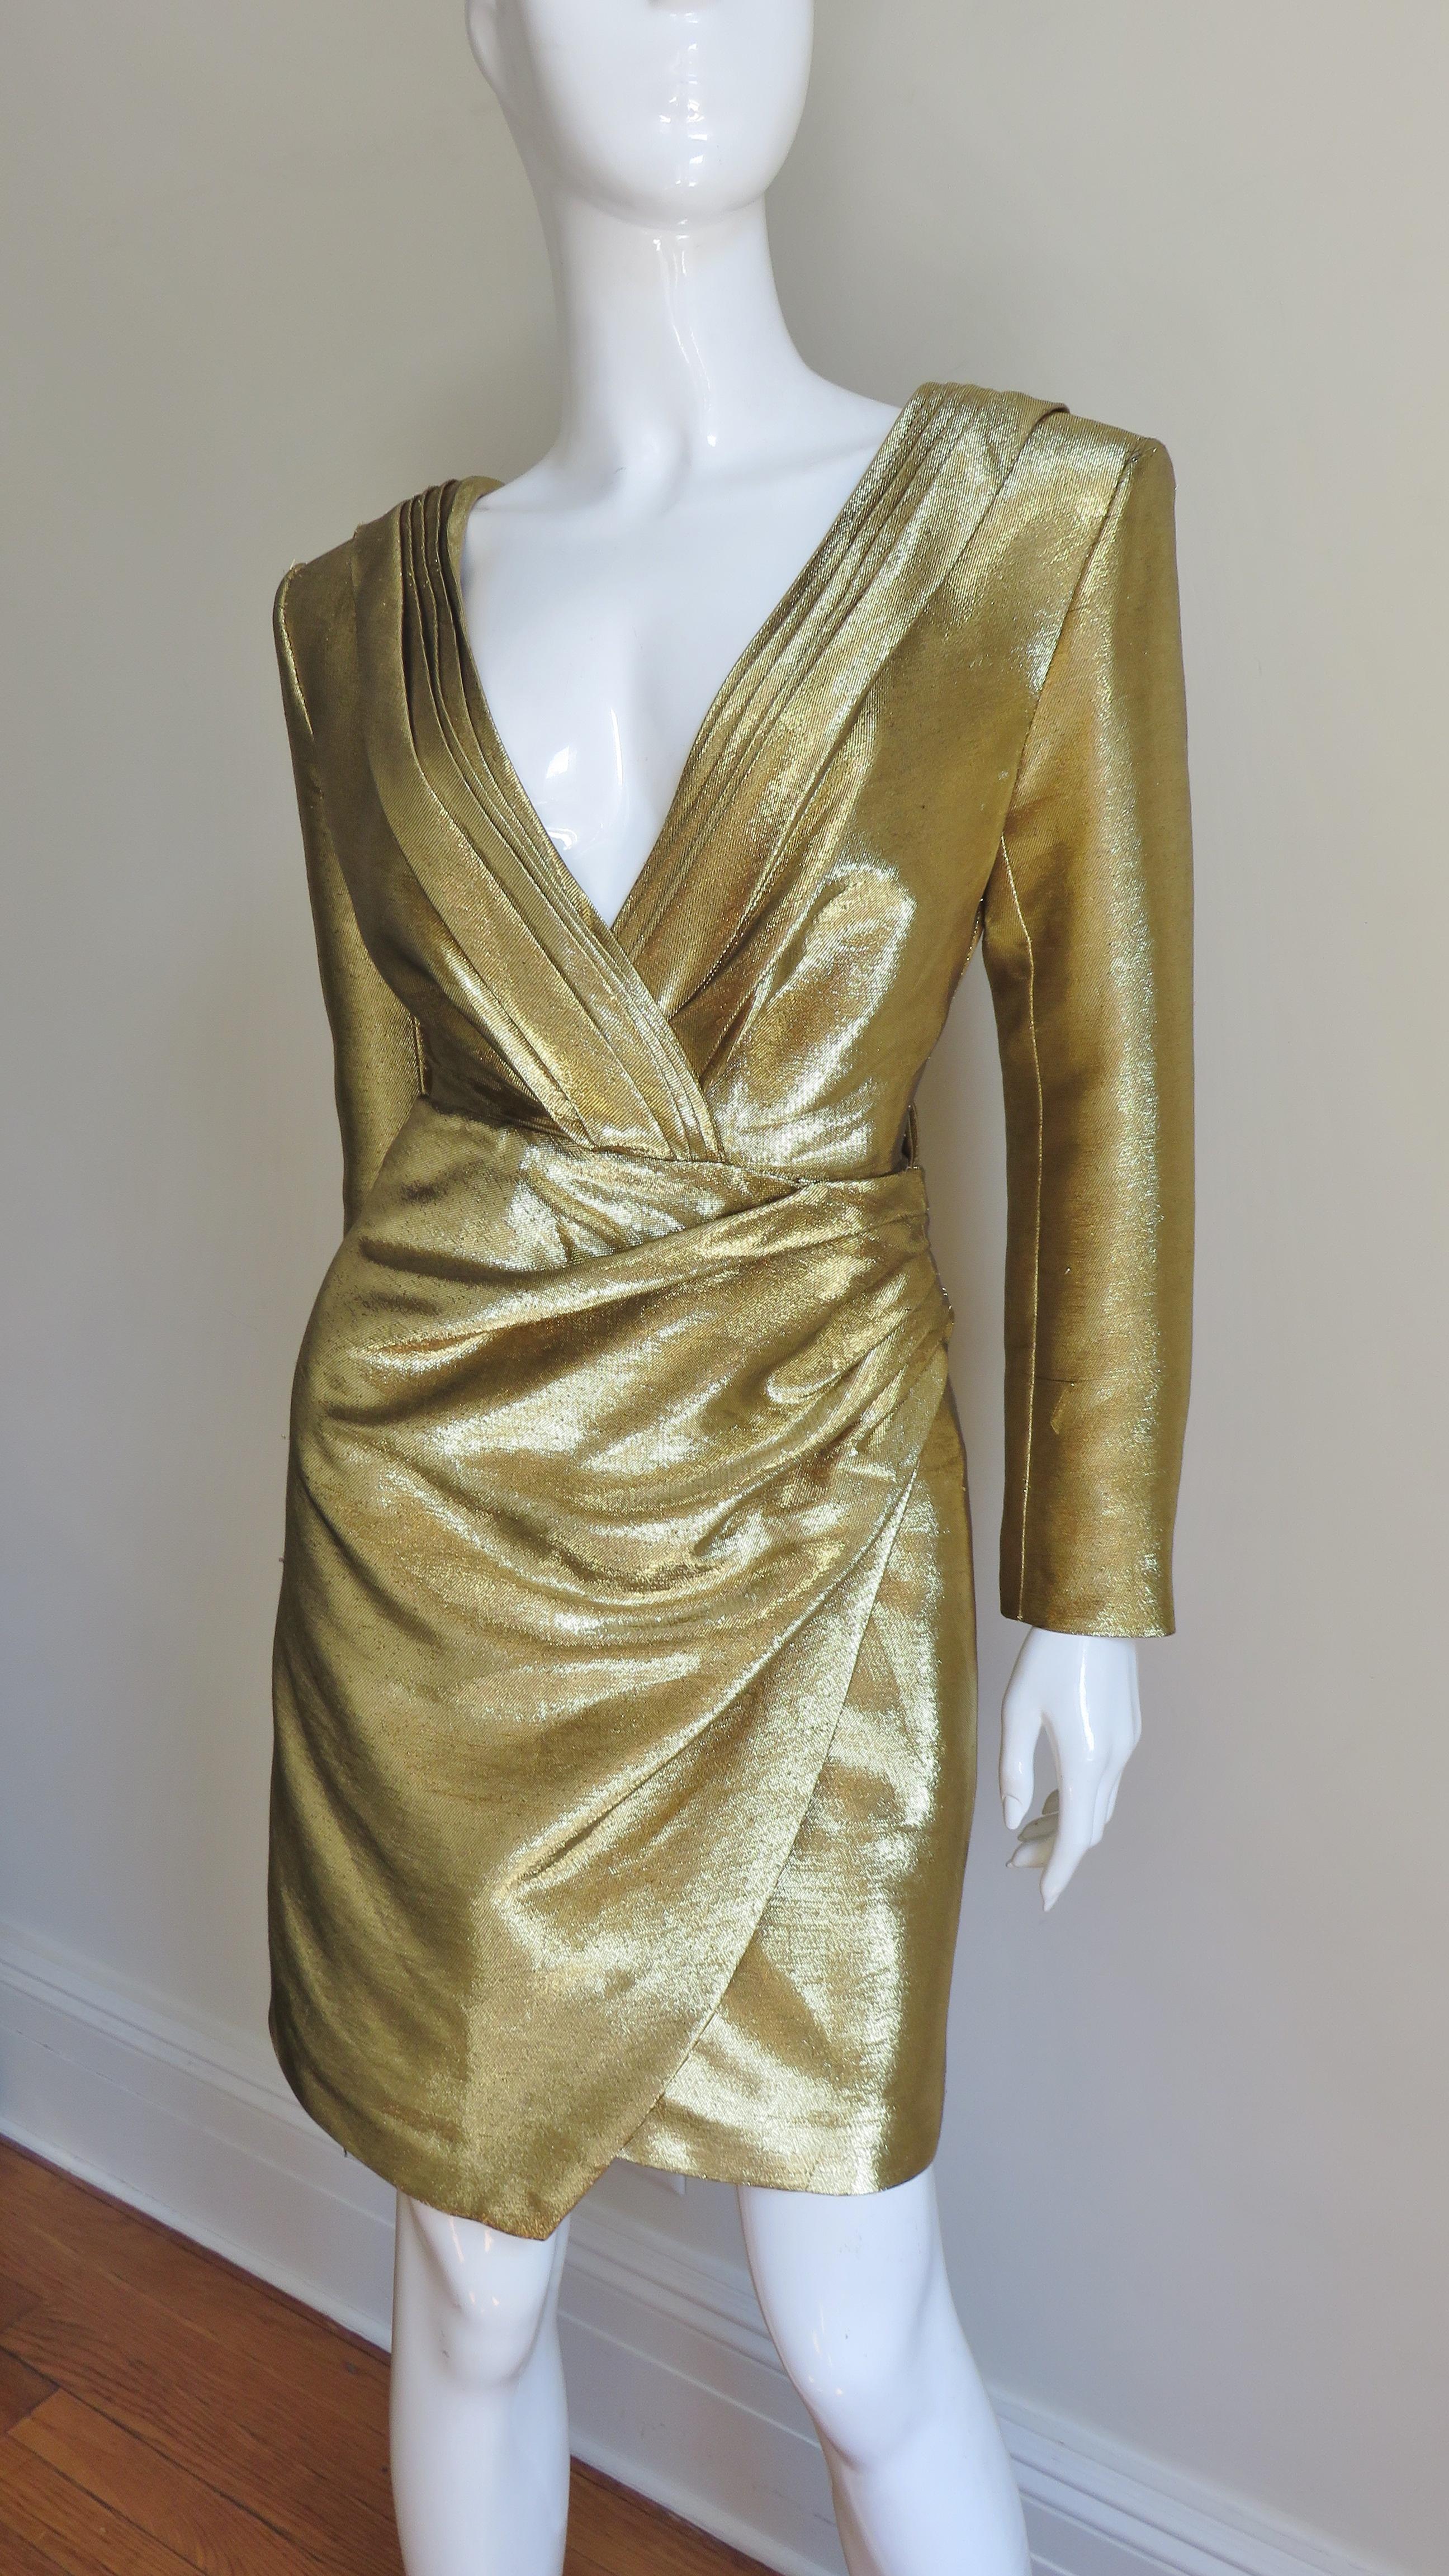 Ein unglaubliches Kleid aus goldenem Lamé von Saint Laurent, das auf Laufstegen und Zeitschriftencovern getragen wurde. Es hat einen umhüllenden V-Ausschnitt vorne und hinten und einen drapierten Rockteil vorne. Es gibt kleine Schulterpads, 5